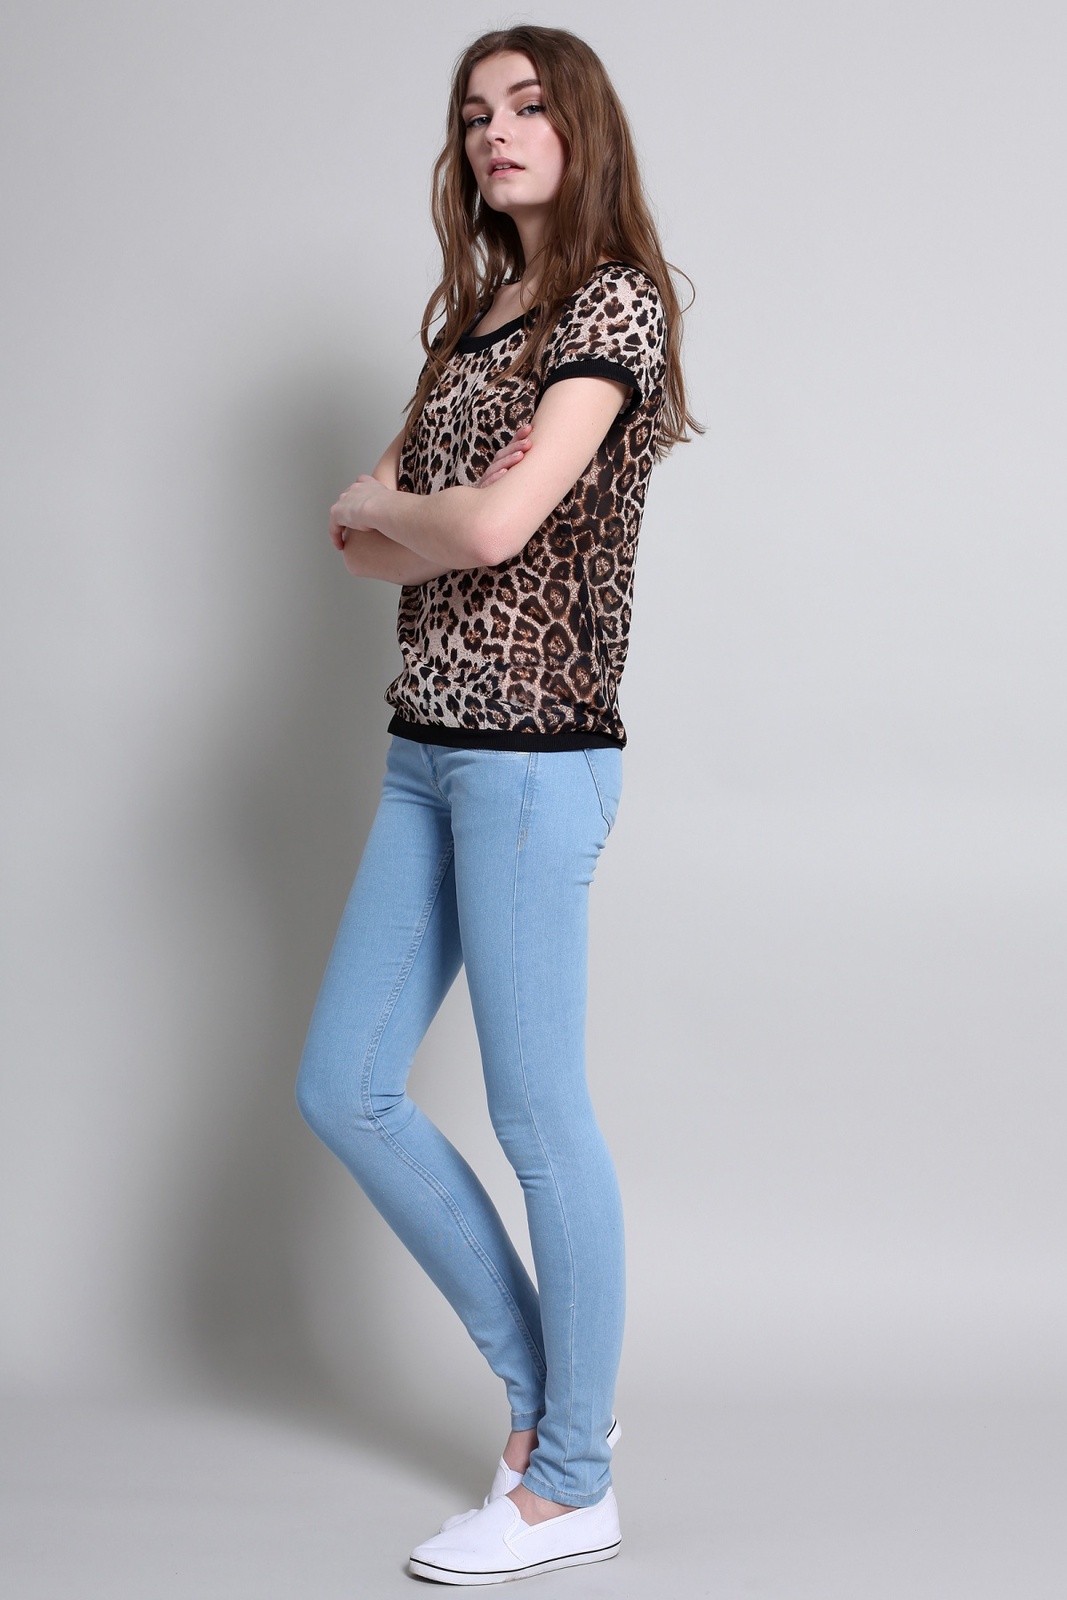 Terranova párducmintás női t-shirt 2015.02.28 fotója